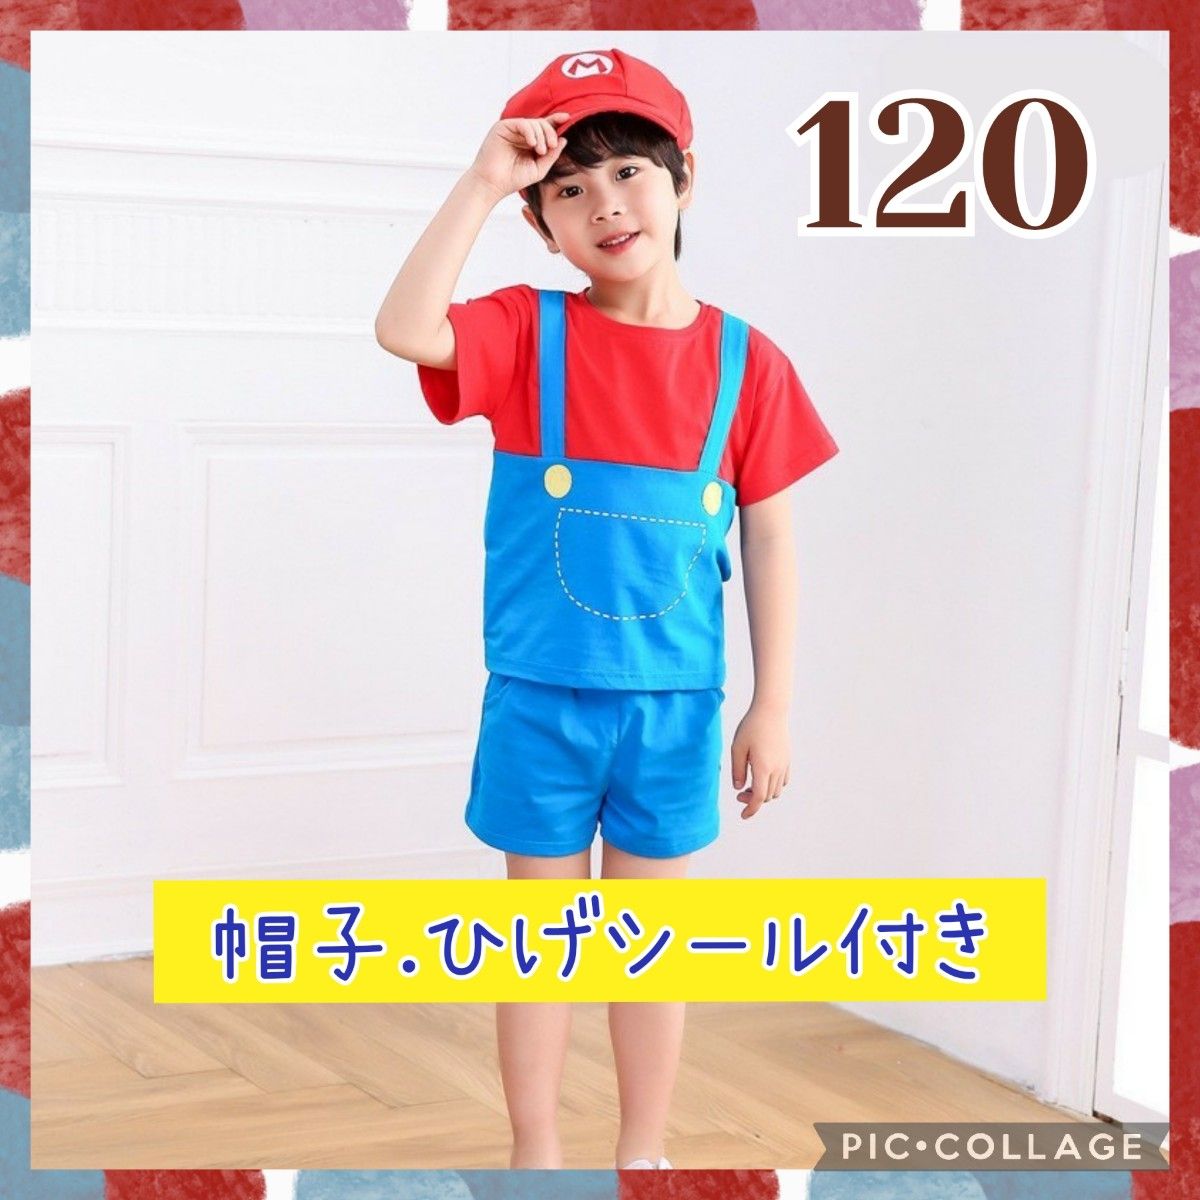 【120】マリオ 帽子付き 子供服 半袖 セットアップ USJ コスプレ 仮装